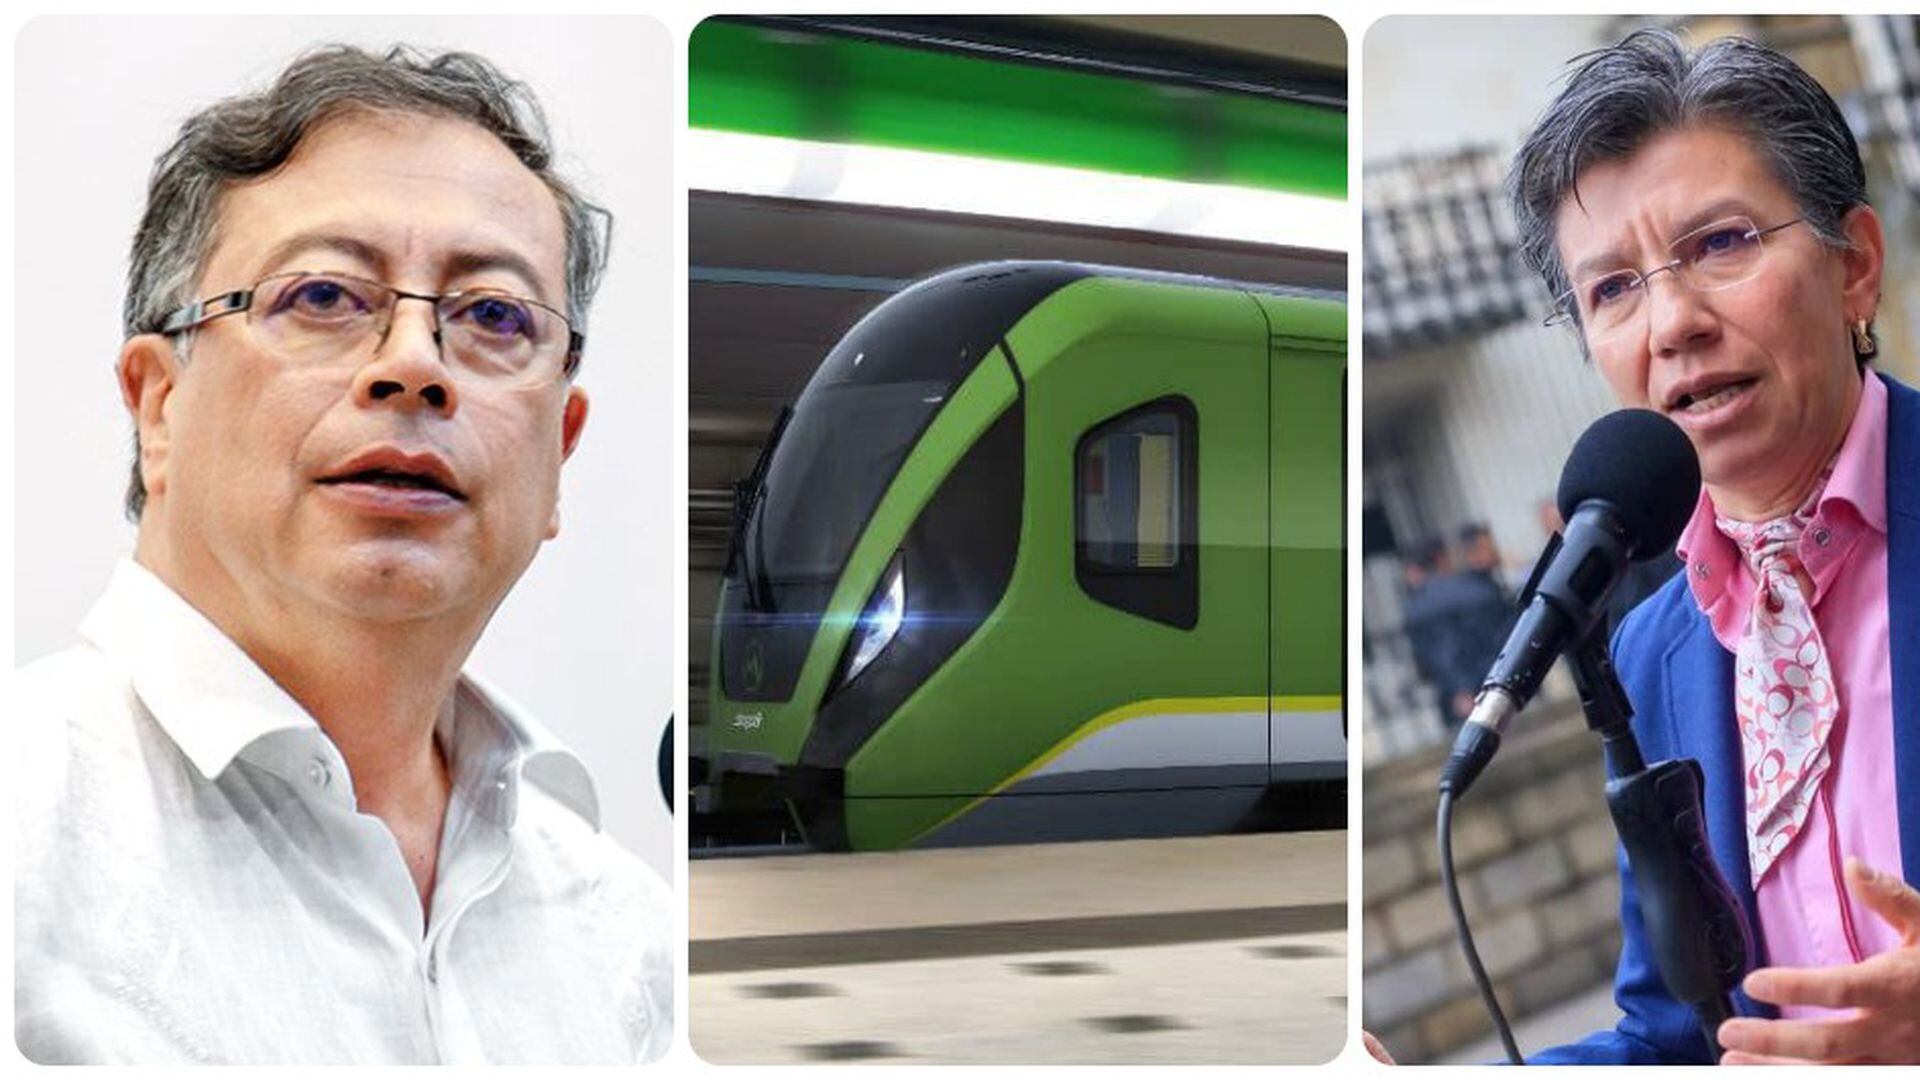 El presidente Gustavo Petro se reunió con la alcaldesa Claudia López y le explicó los detalles de la solicitud que le hizo al consorcio chino relacionada con la primera línea del Metro de Bogotá